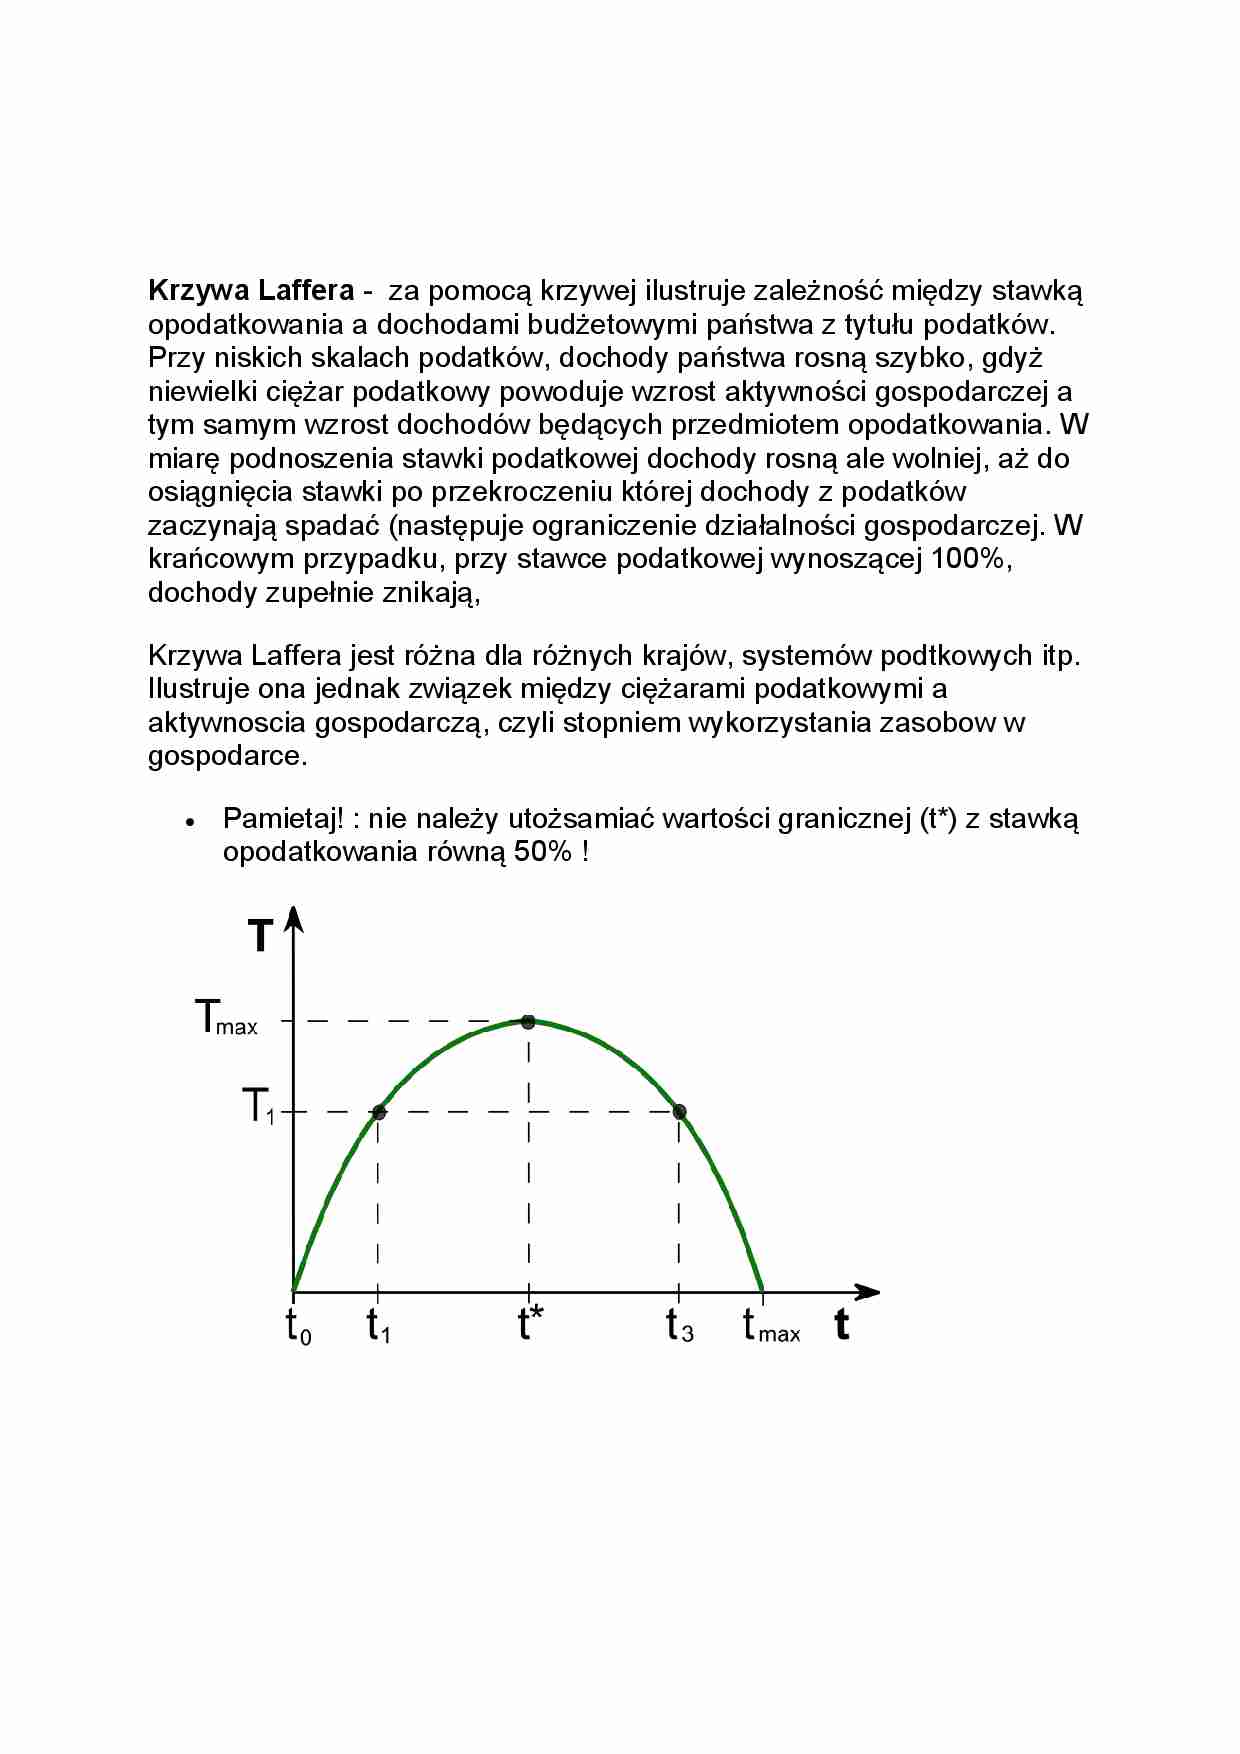 Krzywa Laffera-opracowanie - strona 1